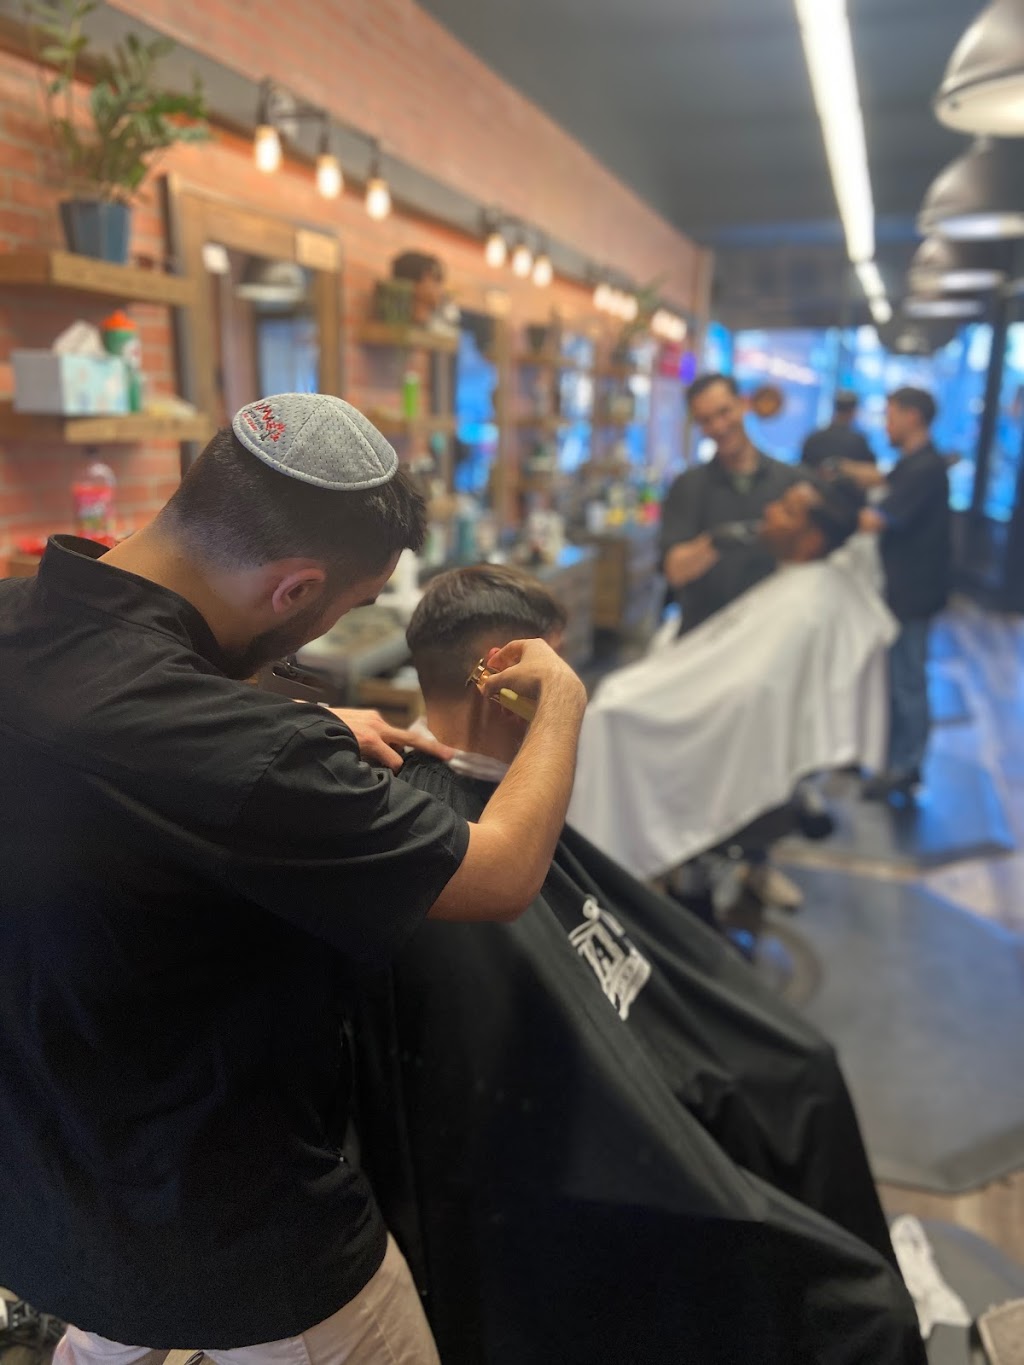 Alfanis Barber Shop | 1240 E Colfax Ave, Denver, CO 80218, USA | Phone: (720) 379-6471